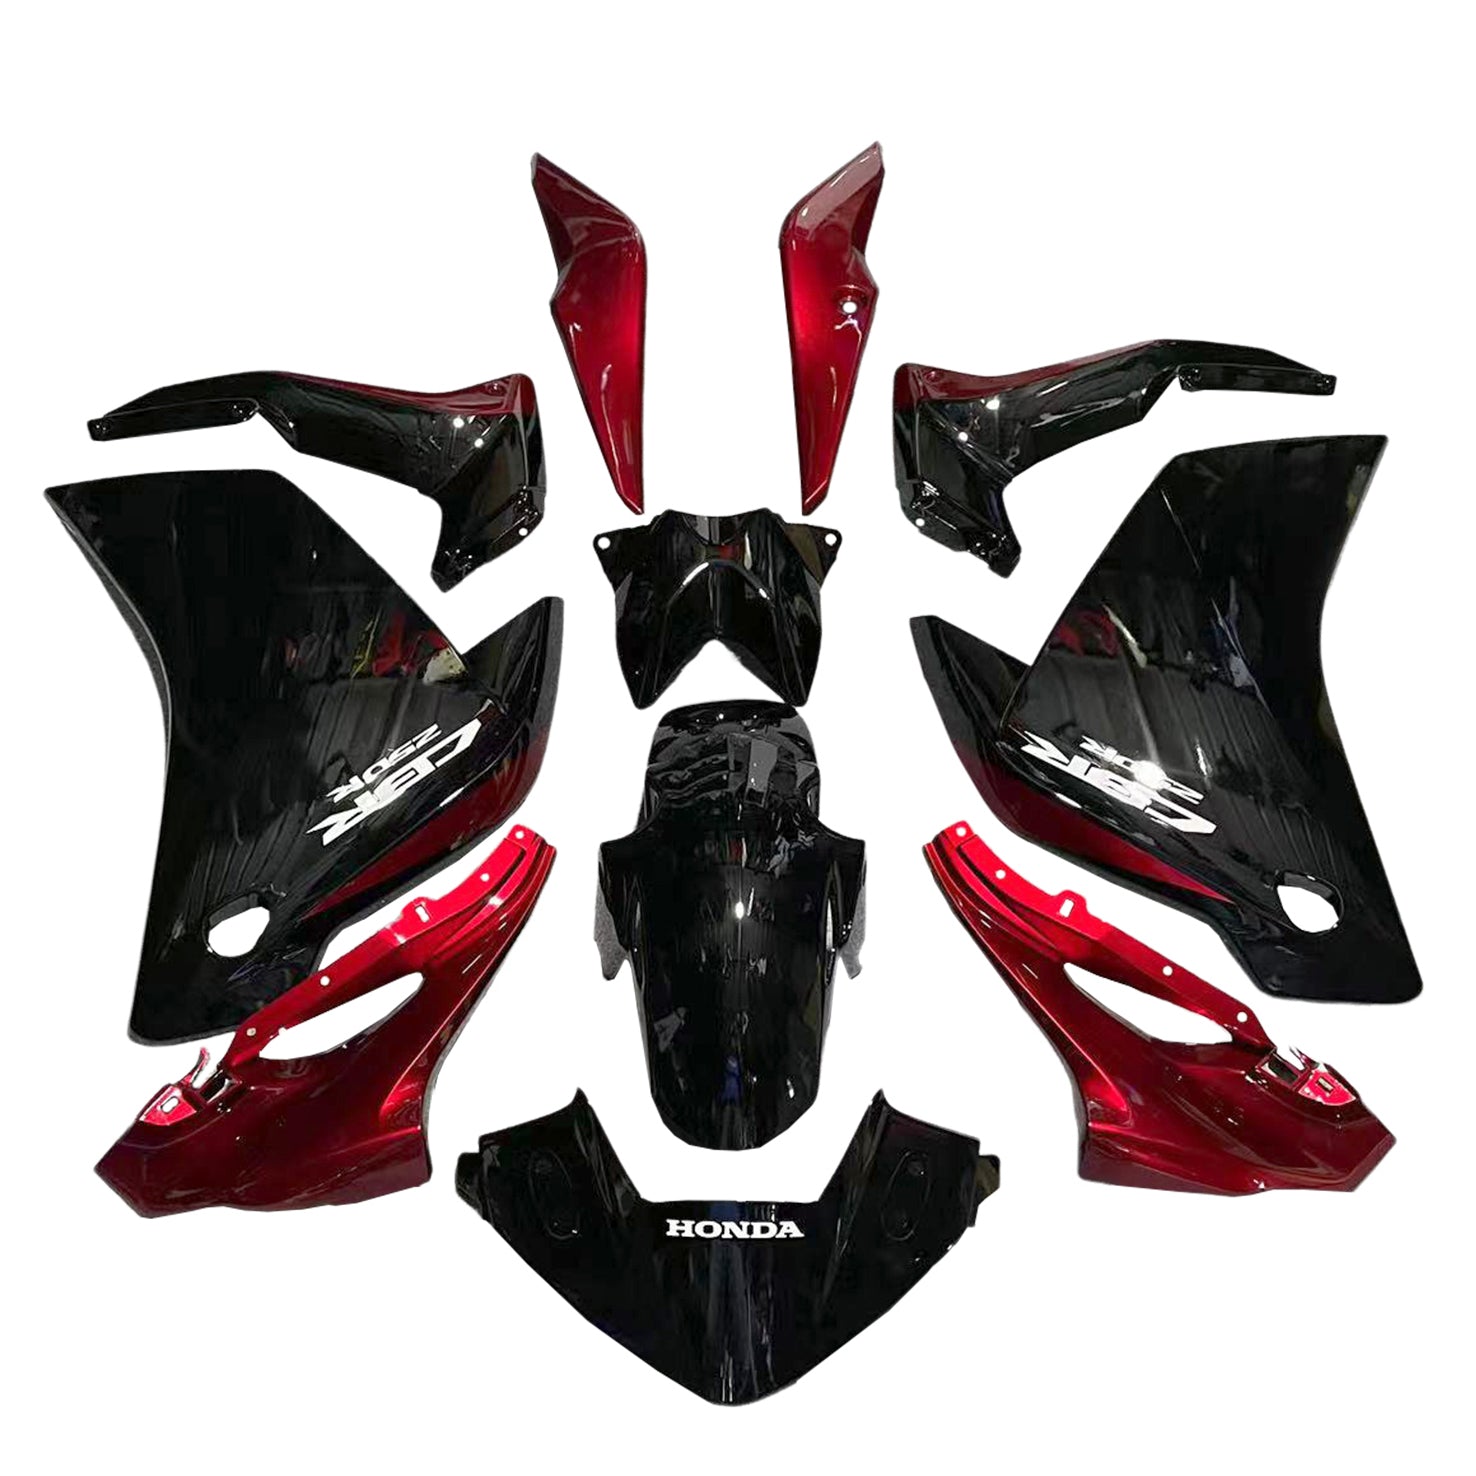 Amotopart Honda CBR250R 2011-2015 Glossy Black&Red Fairing Kit